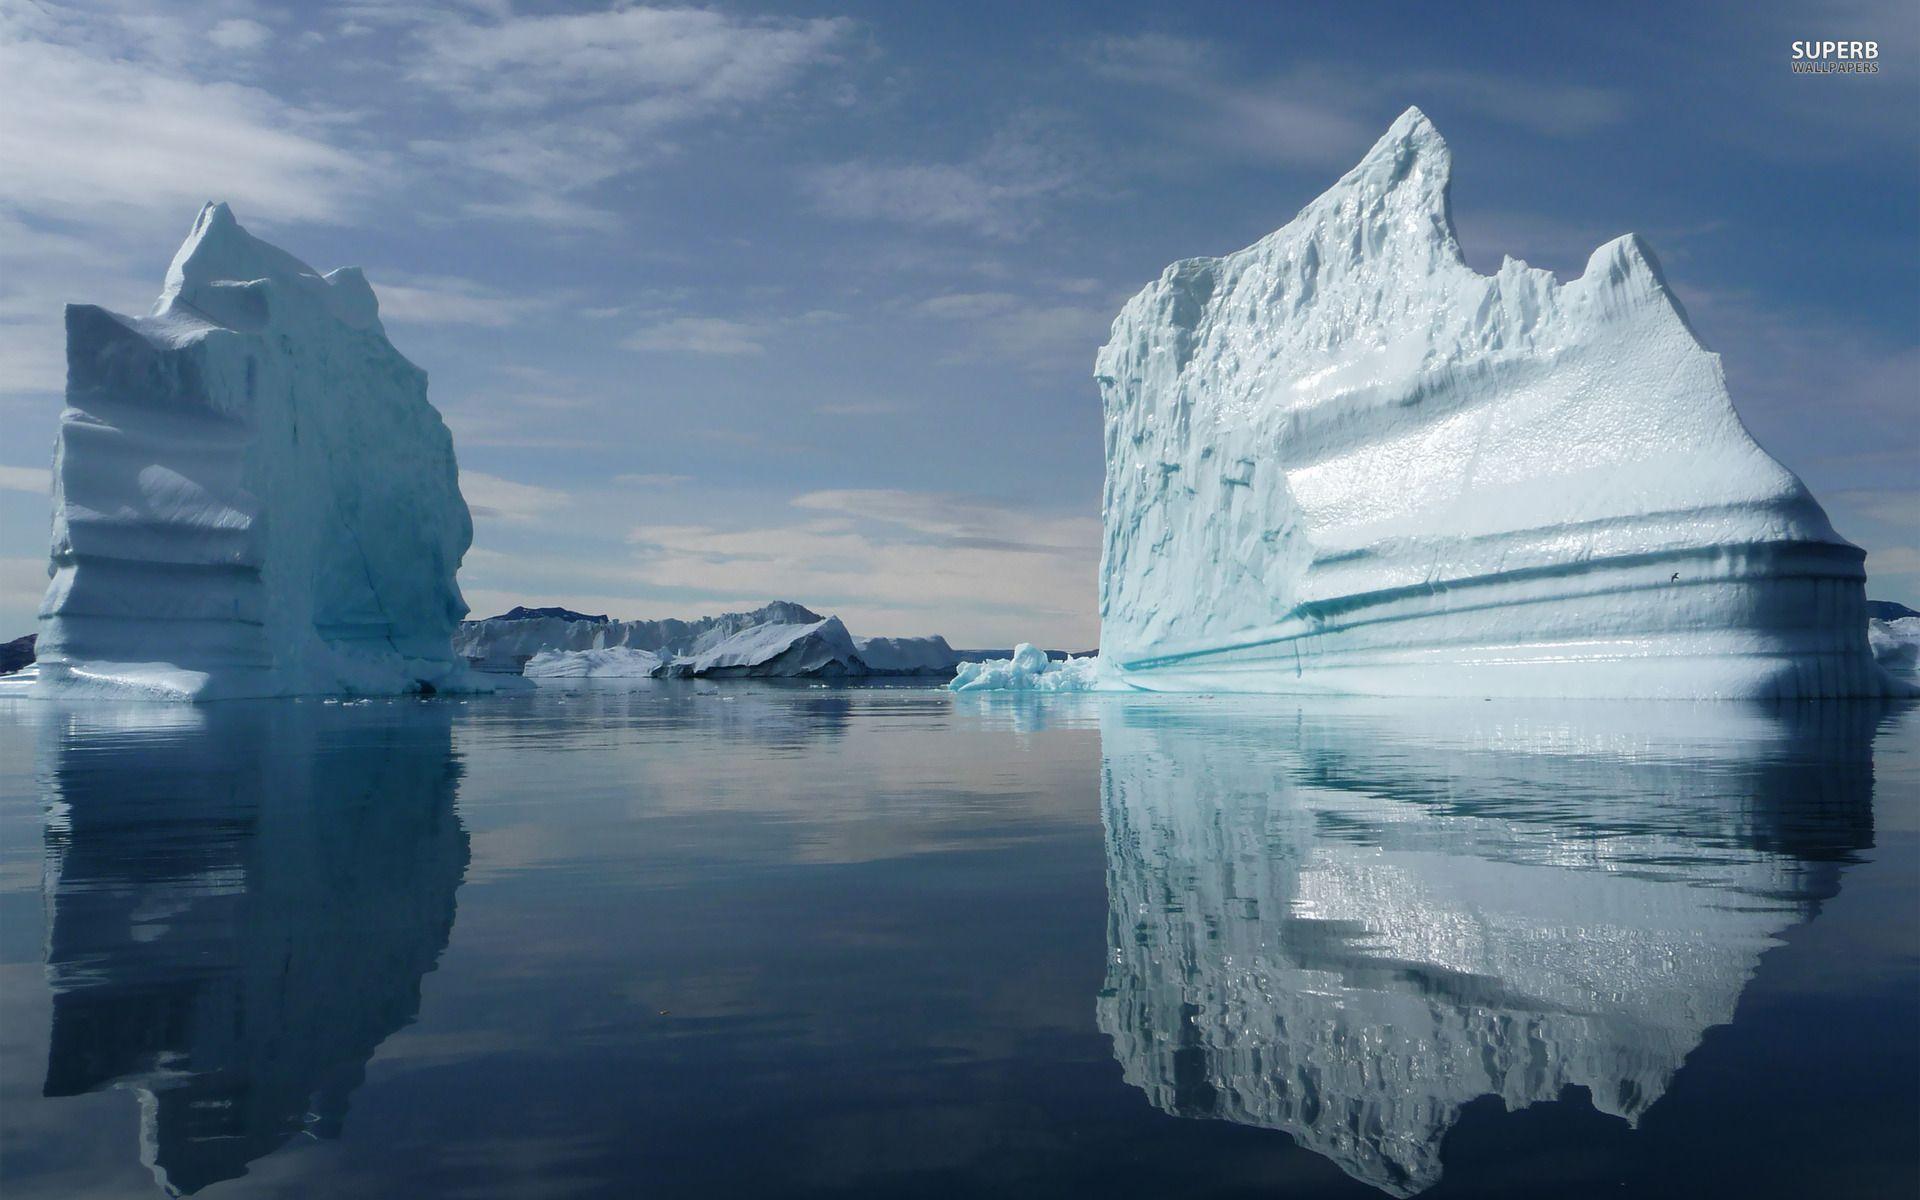 Iceberg, Iceland wallpaper wallpaper - #